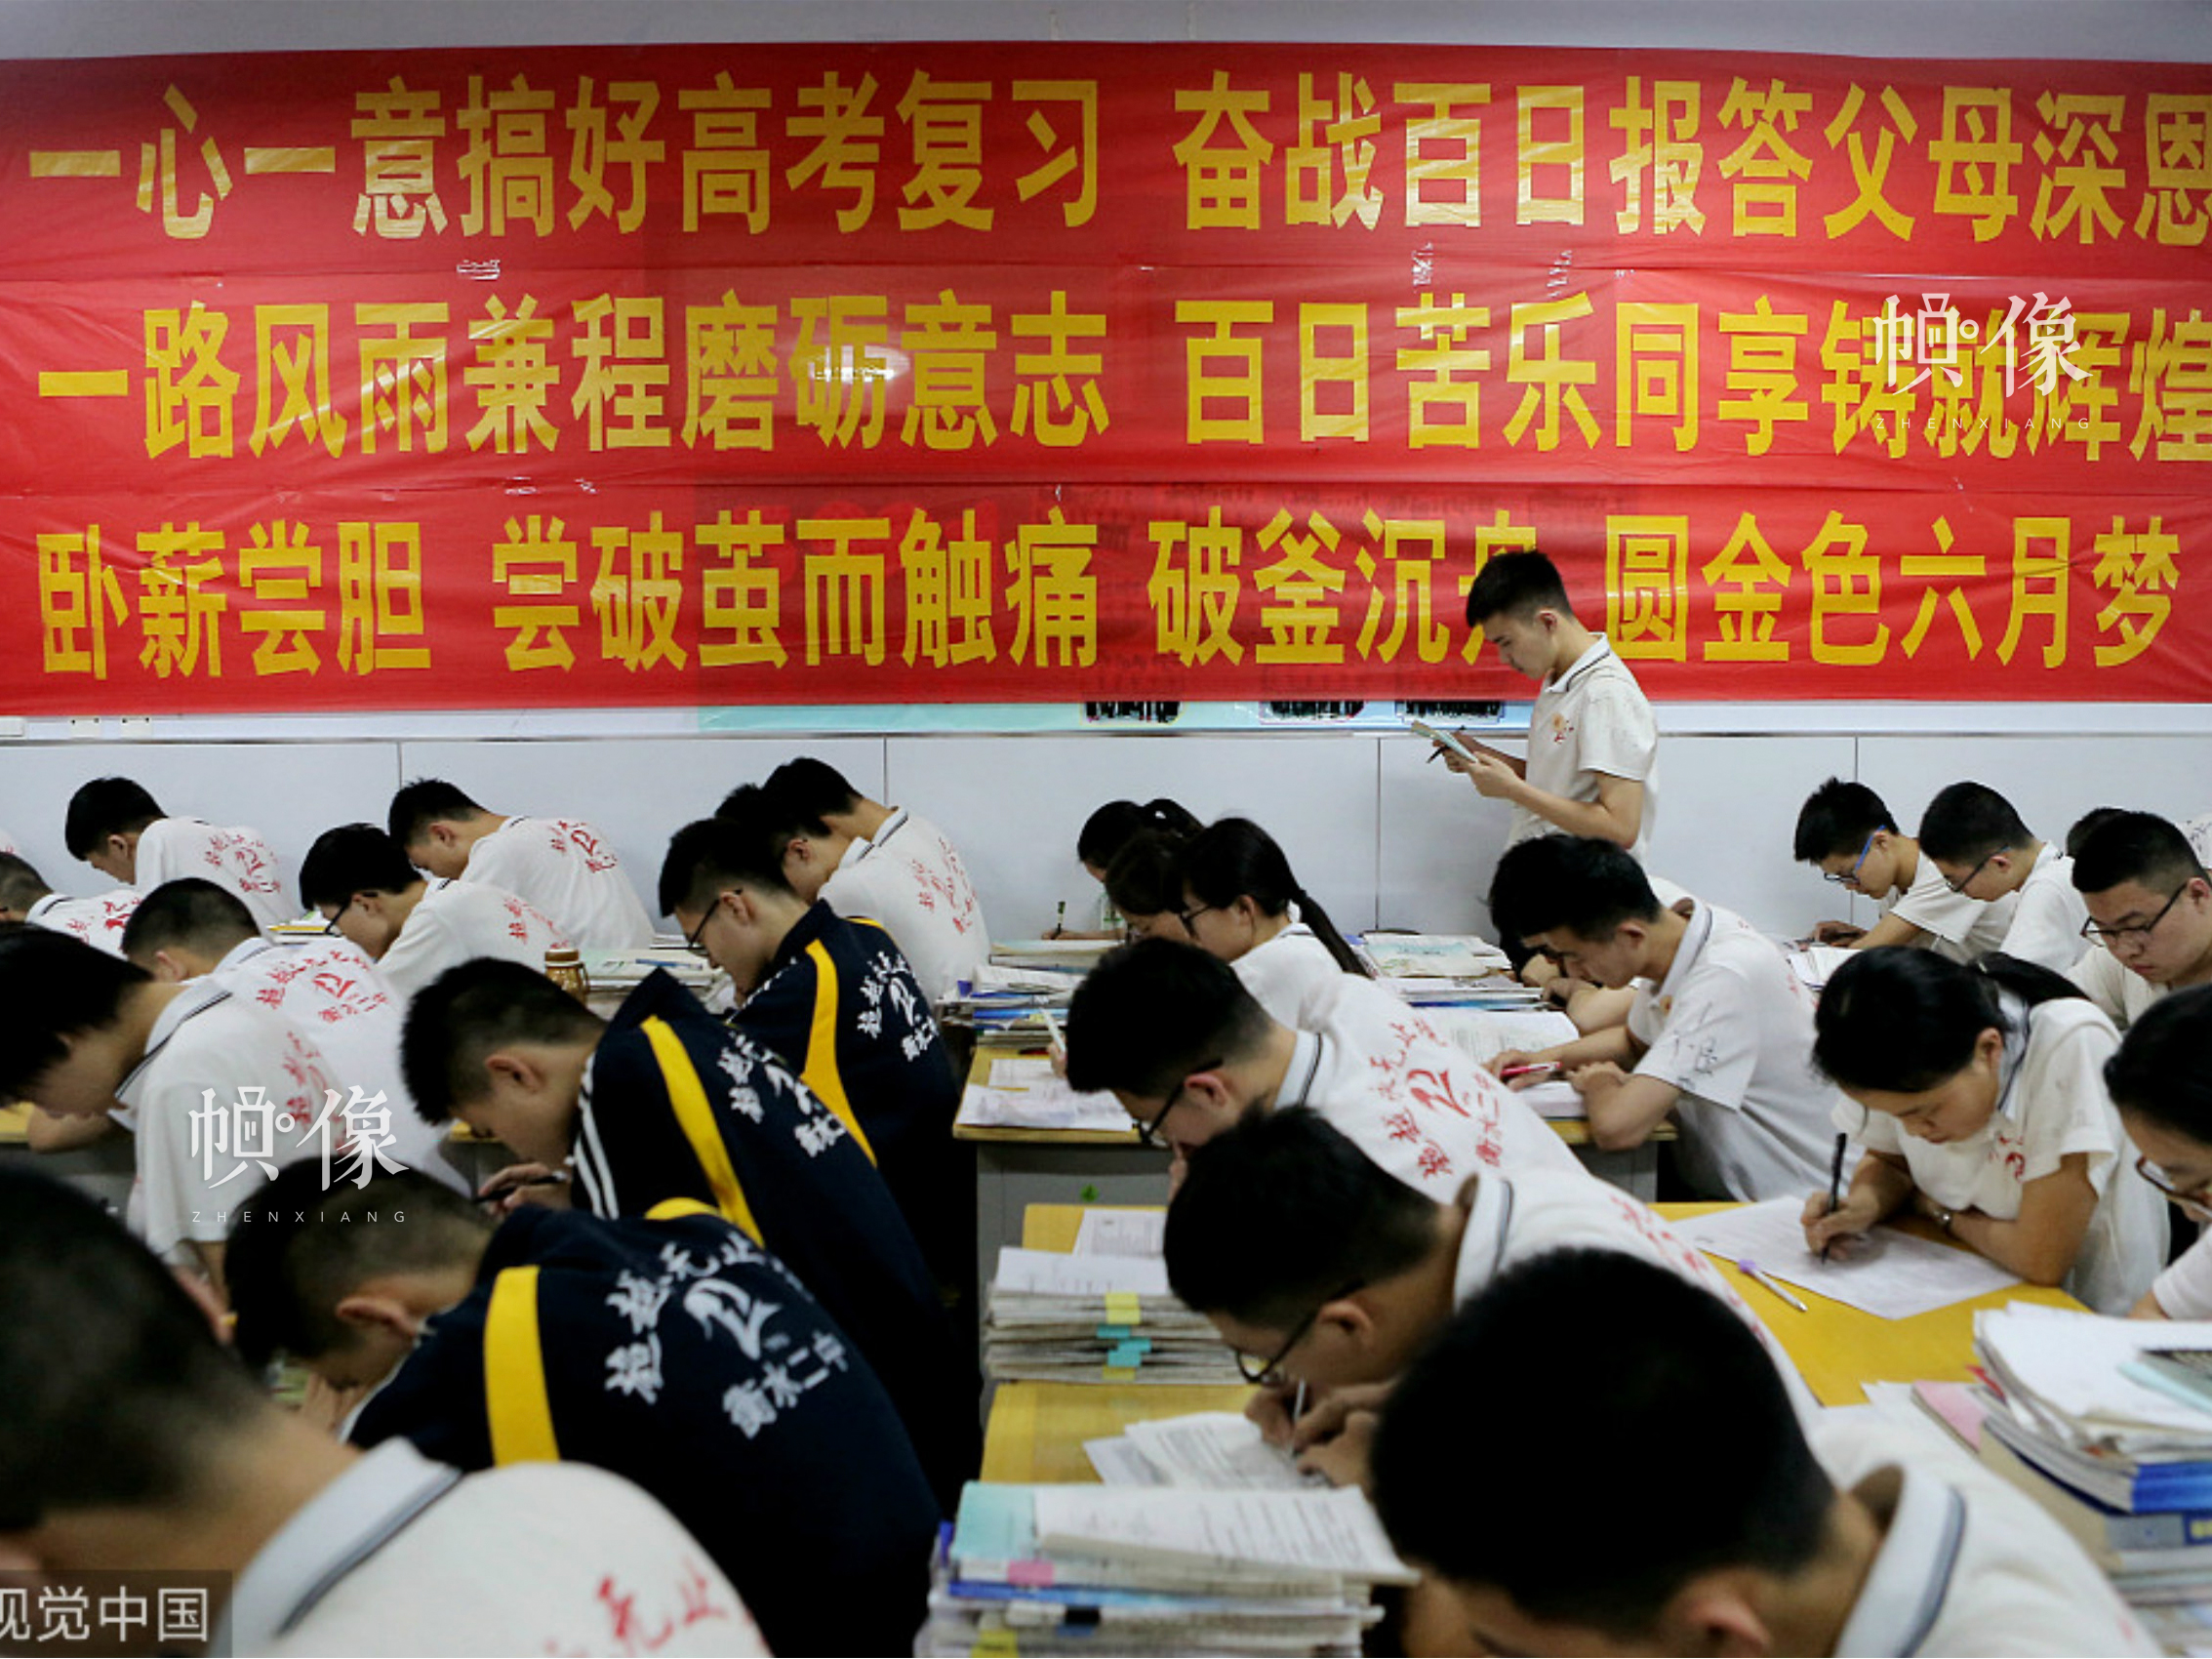 2018年5月3日，河北衡水二中高三學生在教室內上自習，教室內的一面墻上挂滿了的紅色標語條幅。圖片來源：視覺中國